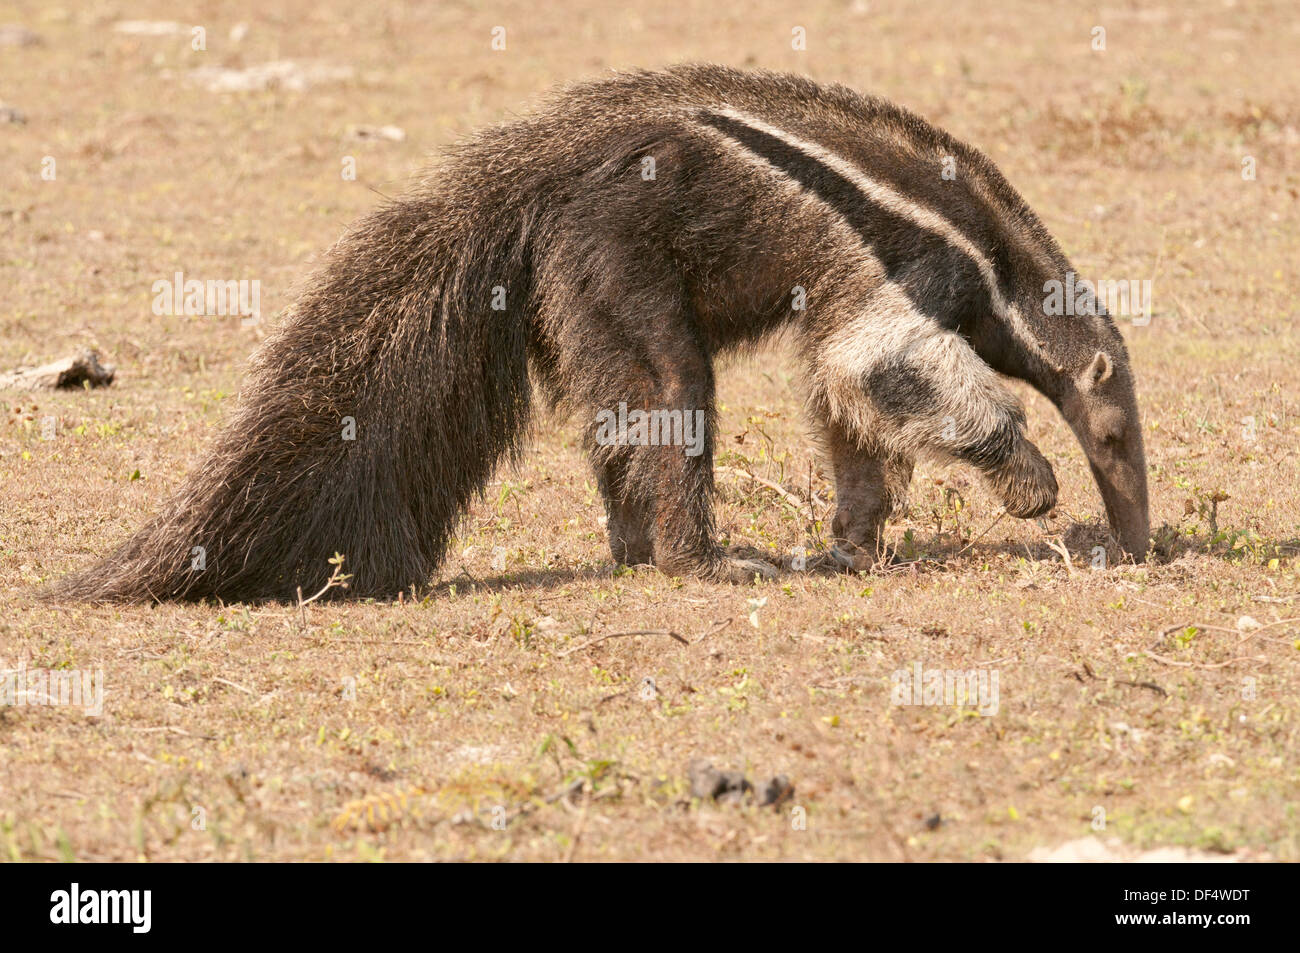 Stock Foto von einem Ameisenbär, Fütterung, Pantanal, Brasilien Stockfoto